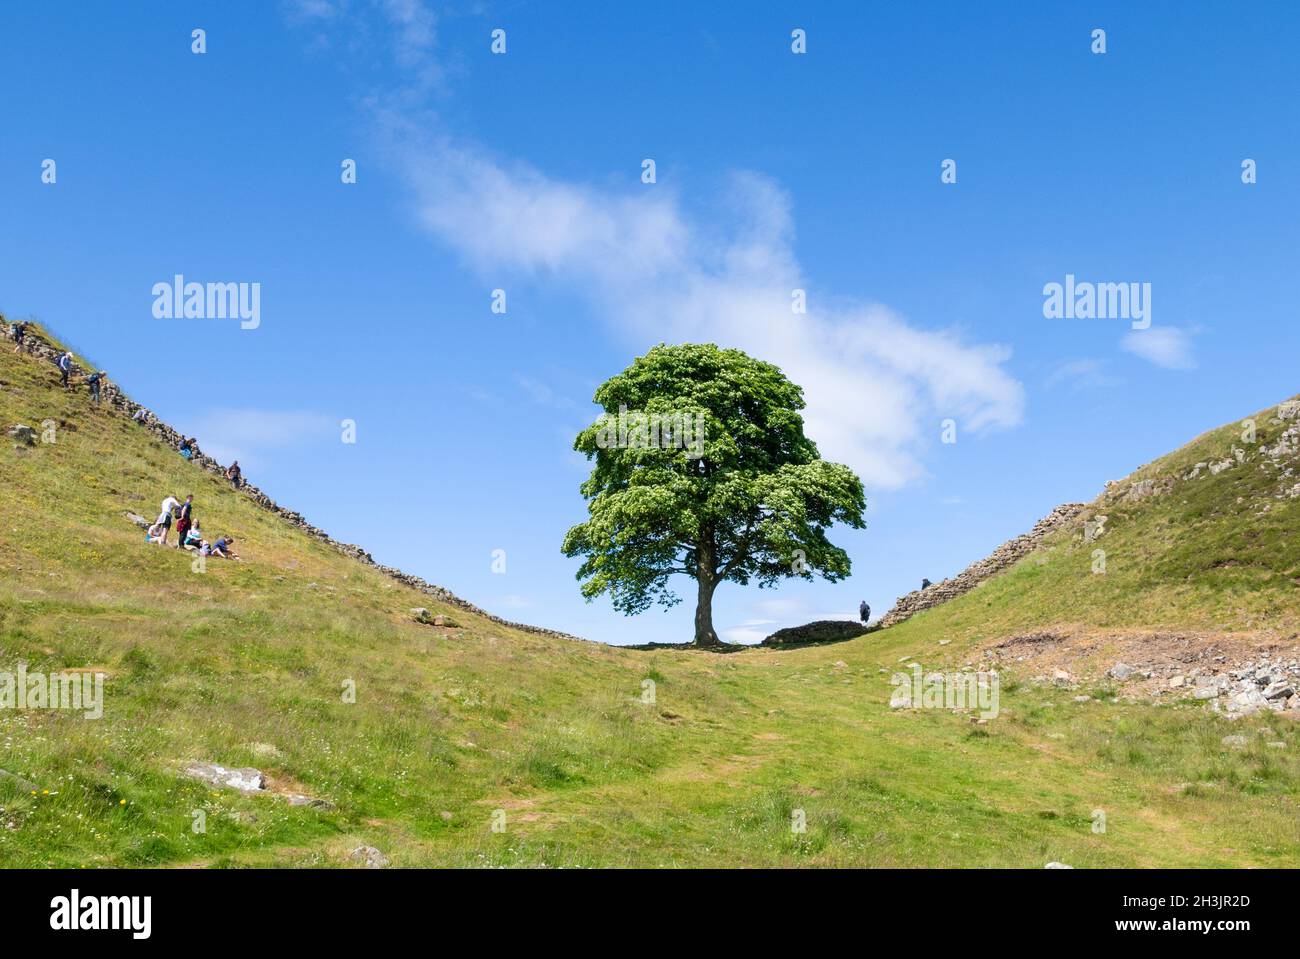 Il Sycamore Gap Tree o Robin Hood Tree un albero di sicomoro accanto al Vallo di Adriano vicino a Crag Lough nel Northumberland Inghilterra UK GB Foto Stock